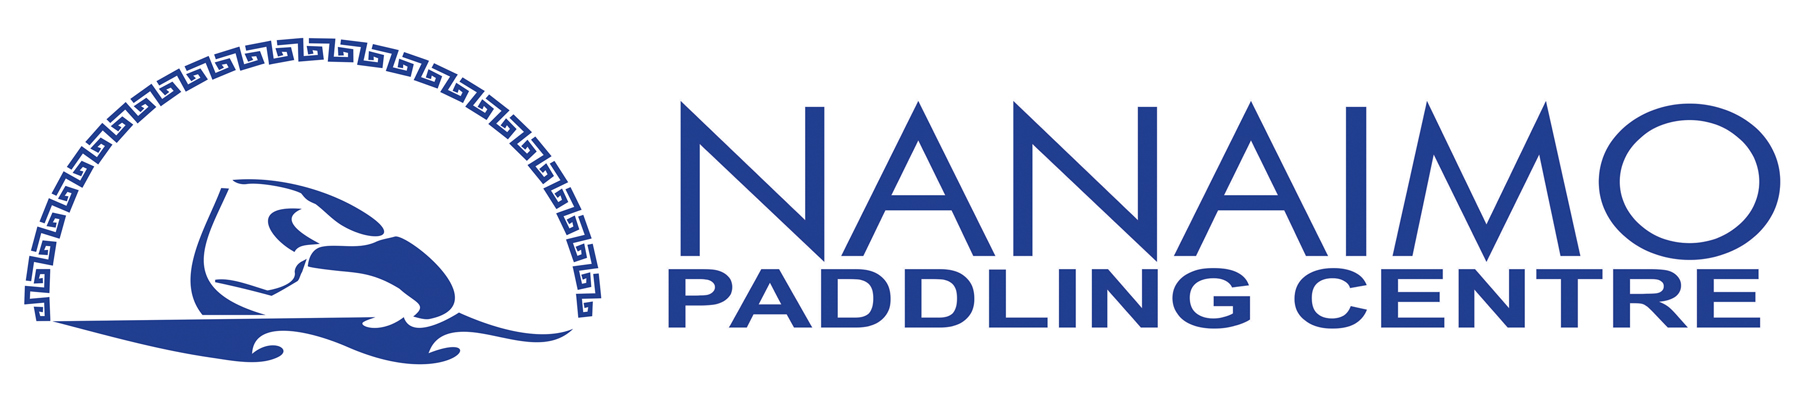 Nanaimo Paddling Centre